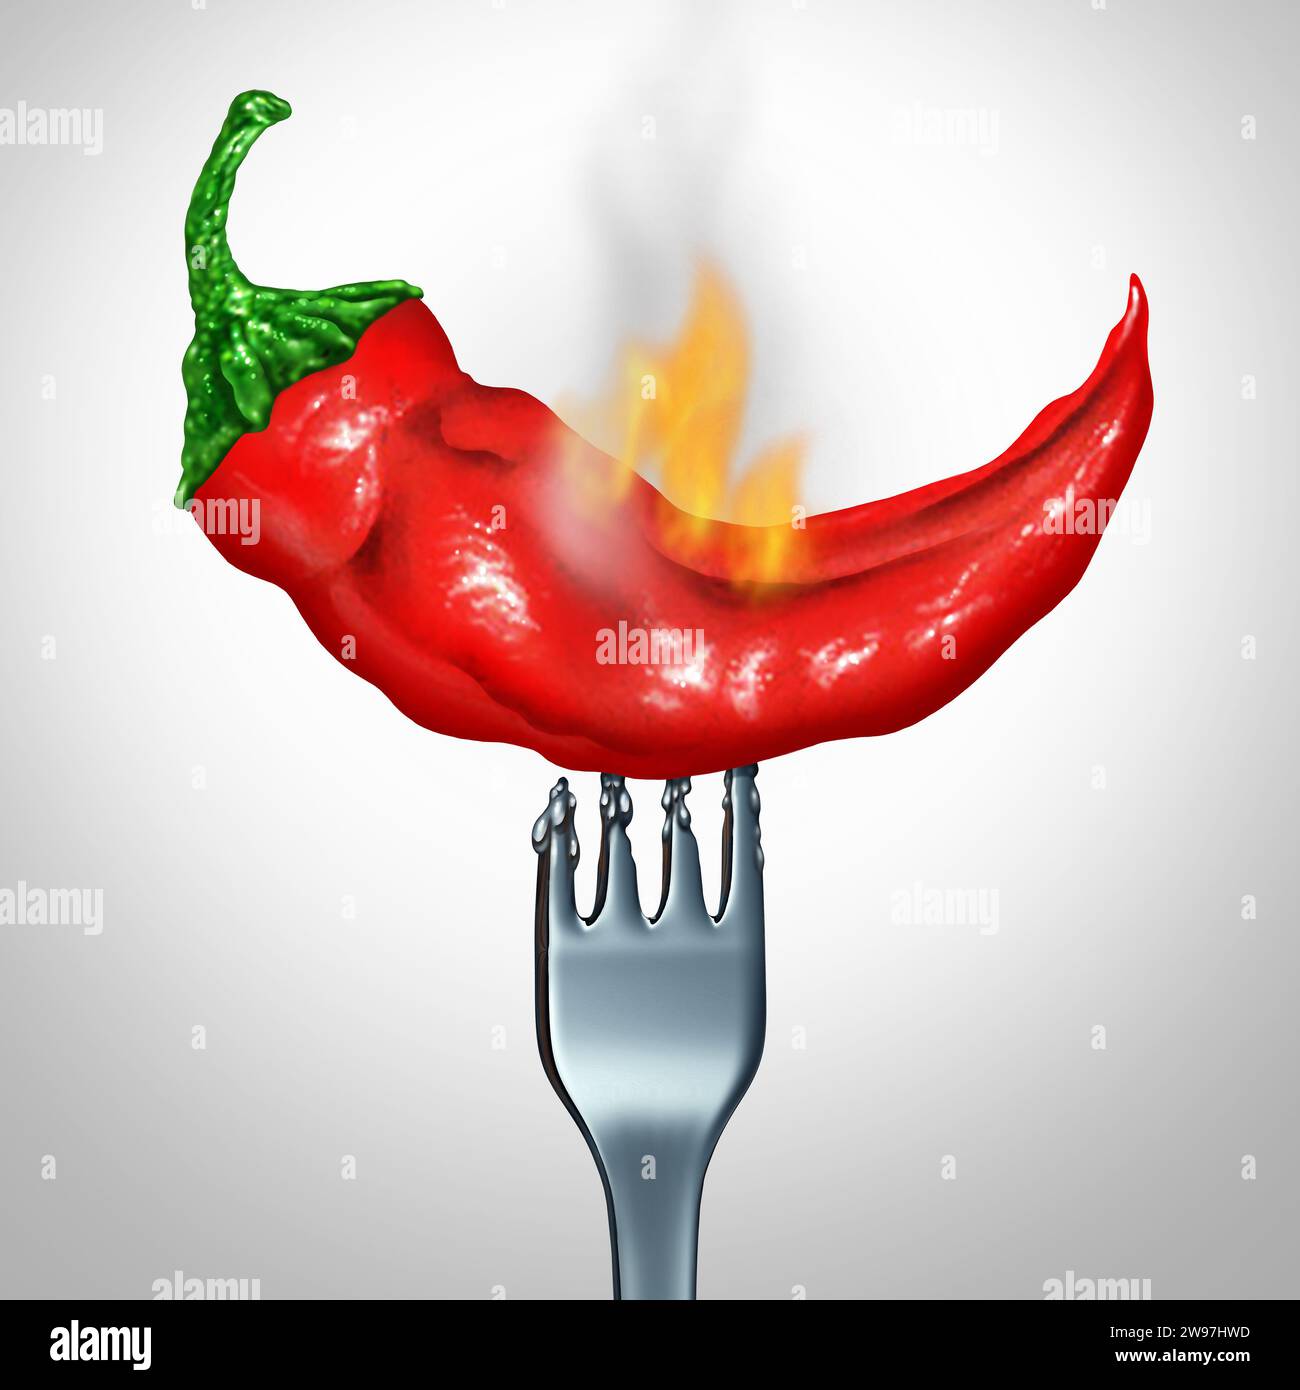 Très Hot Pepper comme ingrédient de chaleur extrême comme un piment rouge au goût épicé très chaud avec une fourchette représentant la cuisine et la cuisine gastronomique. Banque D'Images